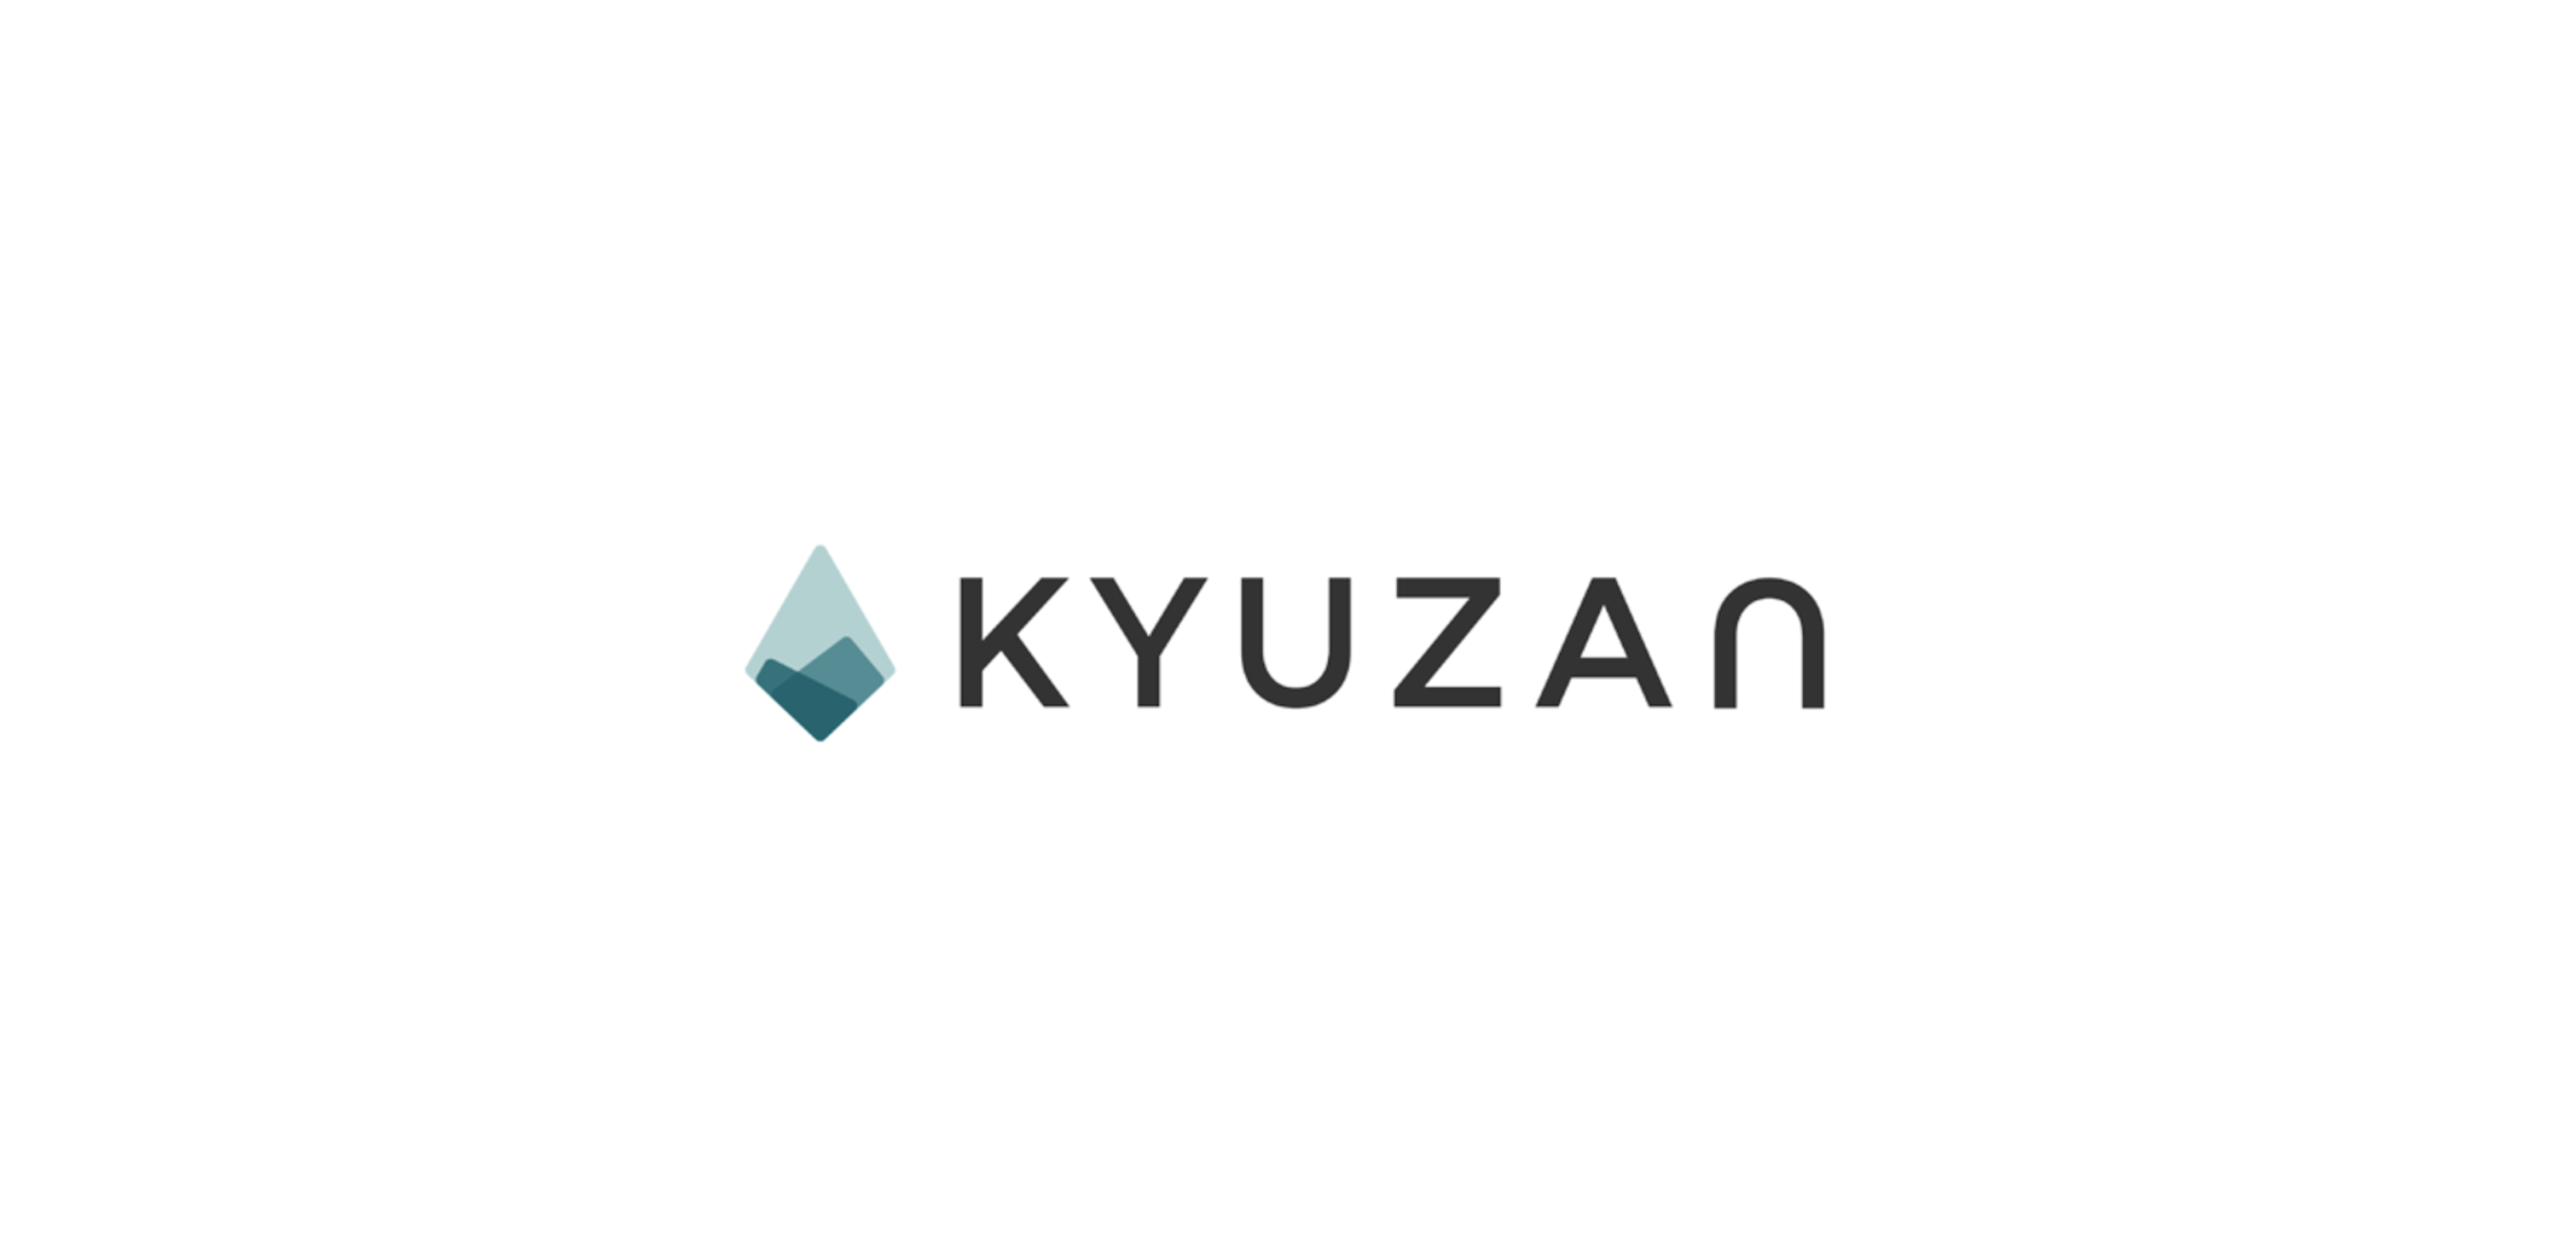 ブロックチェーンとNFTを活用したサービスと技術基盤を提供する株式会社Kyuzanに出資